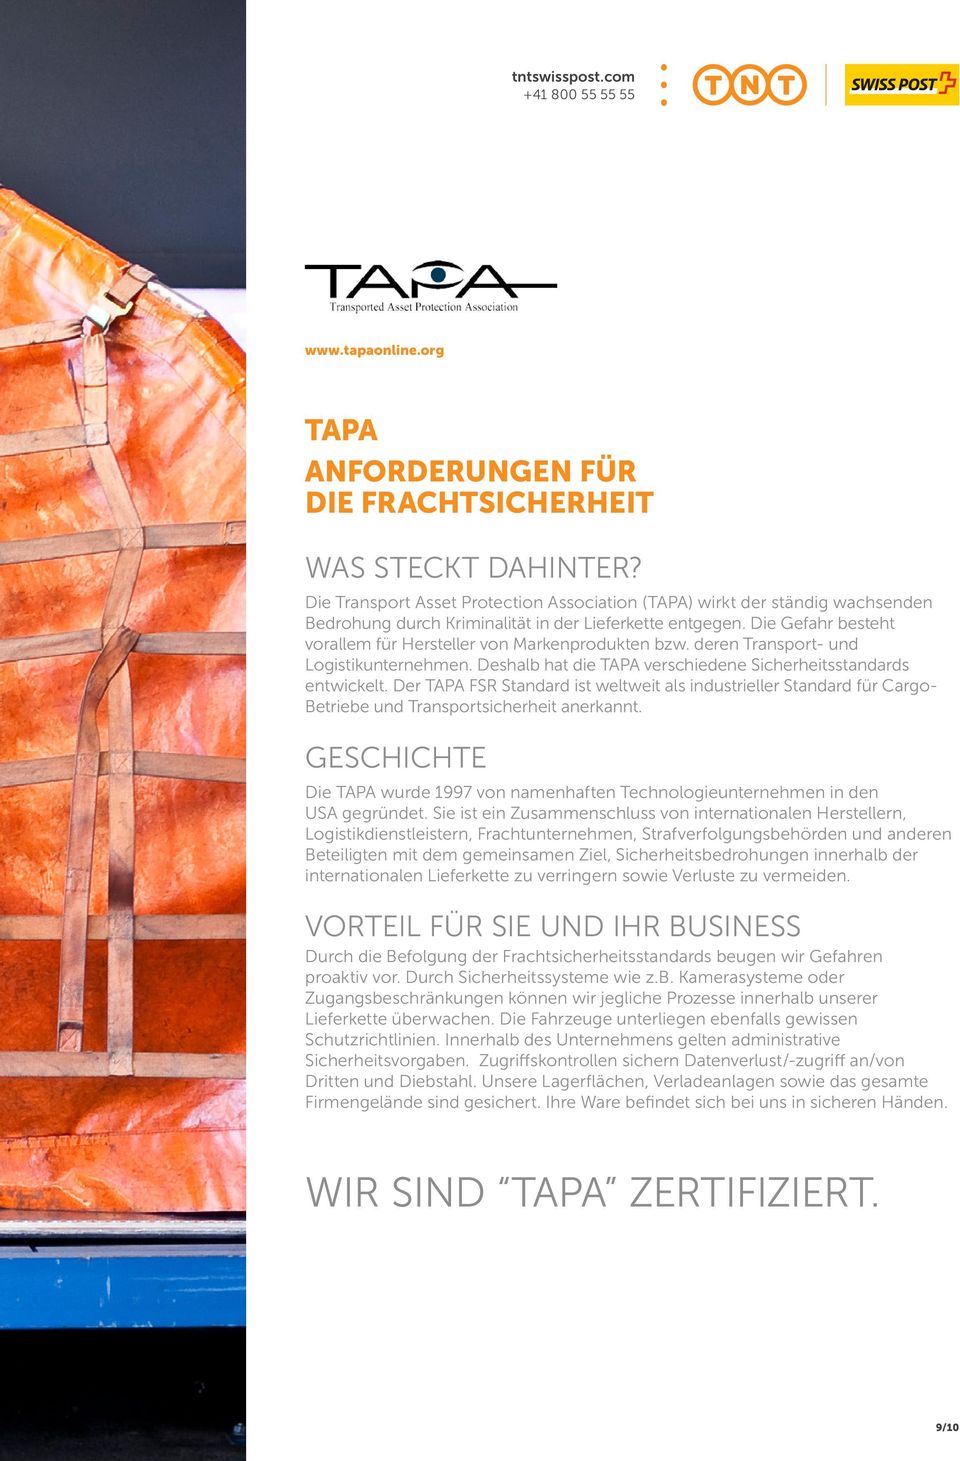 Die Gefahr besteht vorallem für Hersteller von Markenprodukten bzw. deren Transport- und Logistikunternehmen. Deshalb hat die TAPA verschiedene Sicherheitsstandards entwickelt.